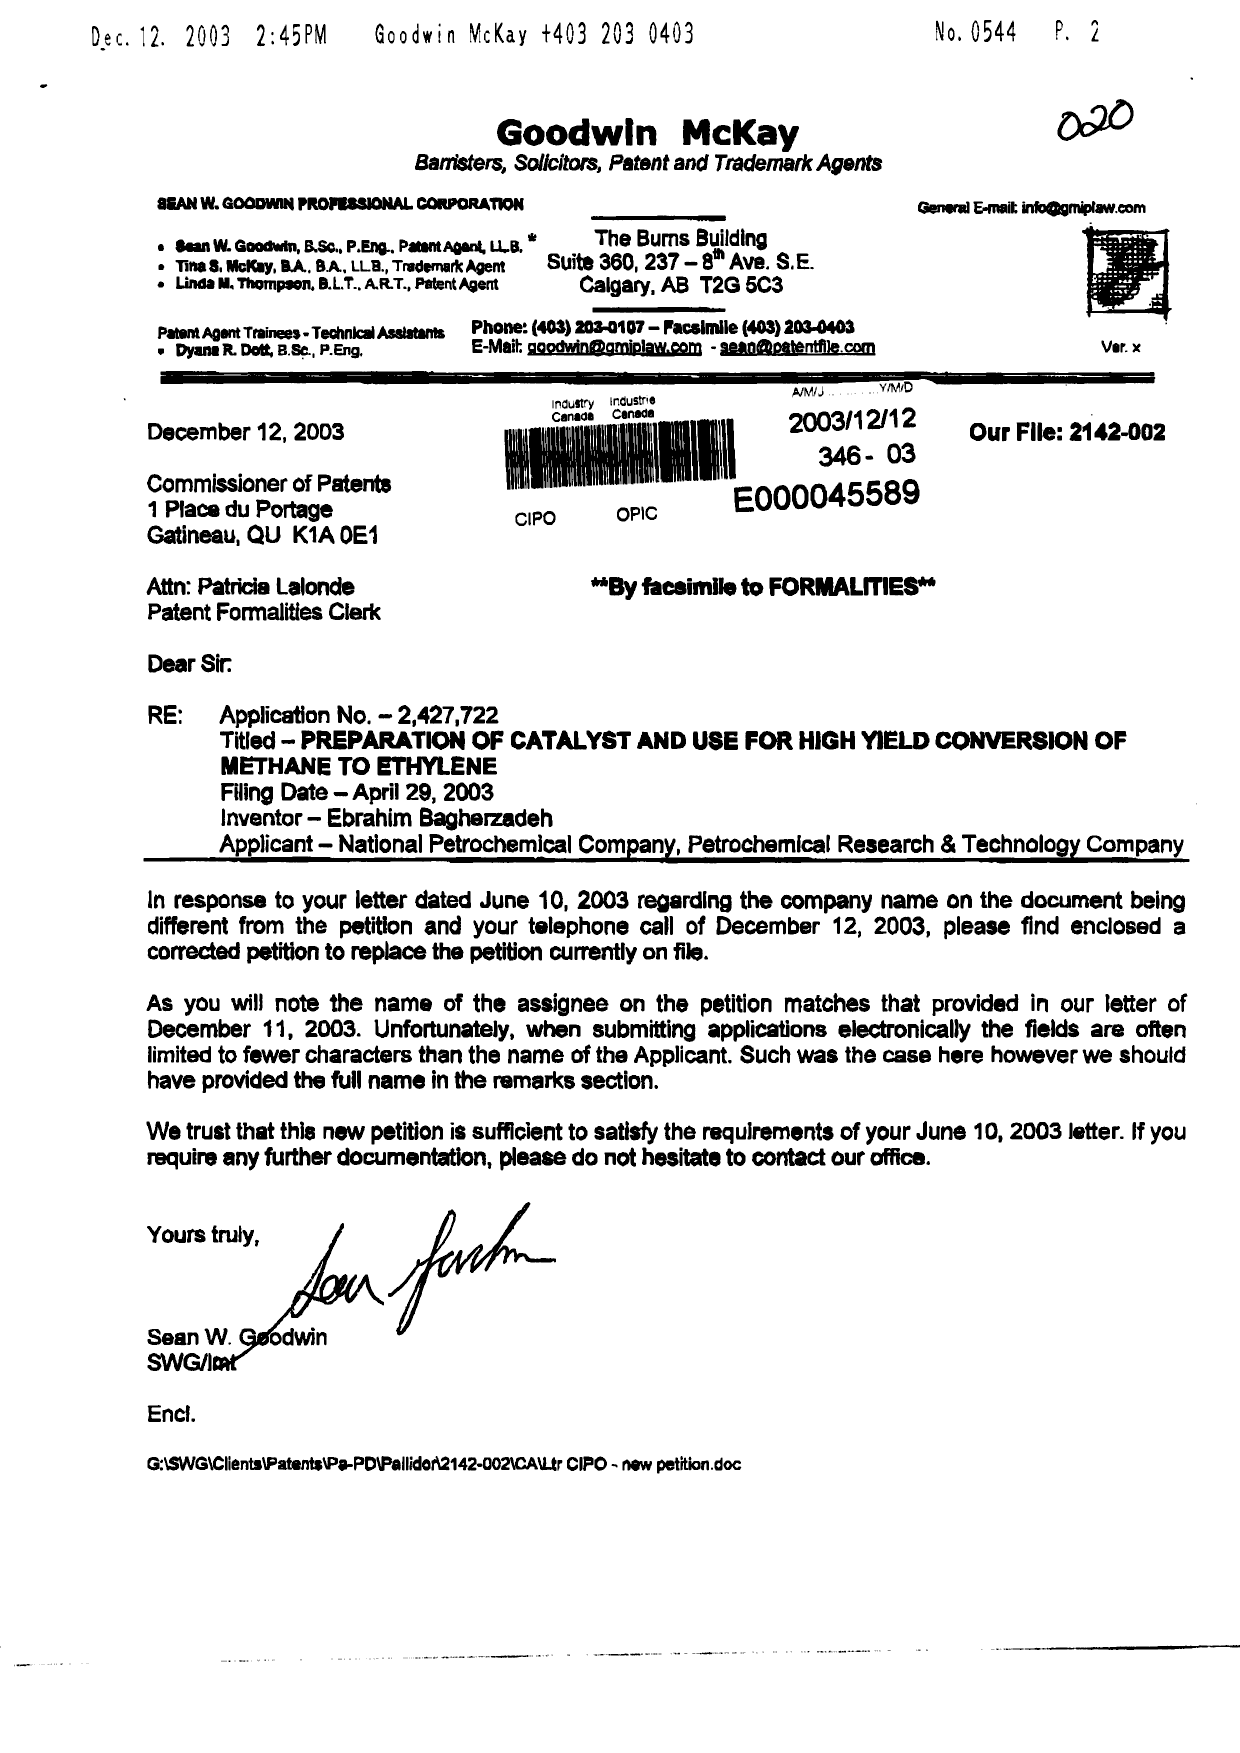 Document de brevet canadien 2427722. Correspondance 20031212. Image 1 de 4